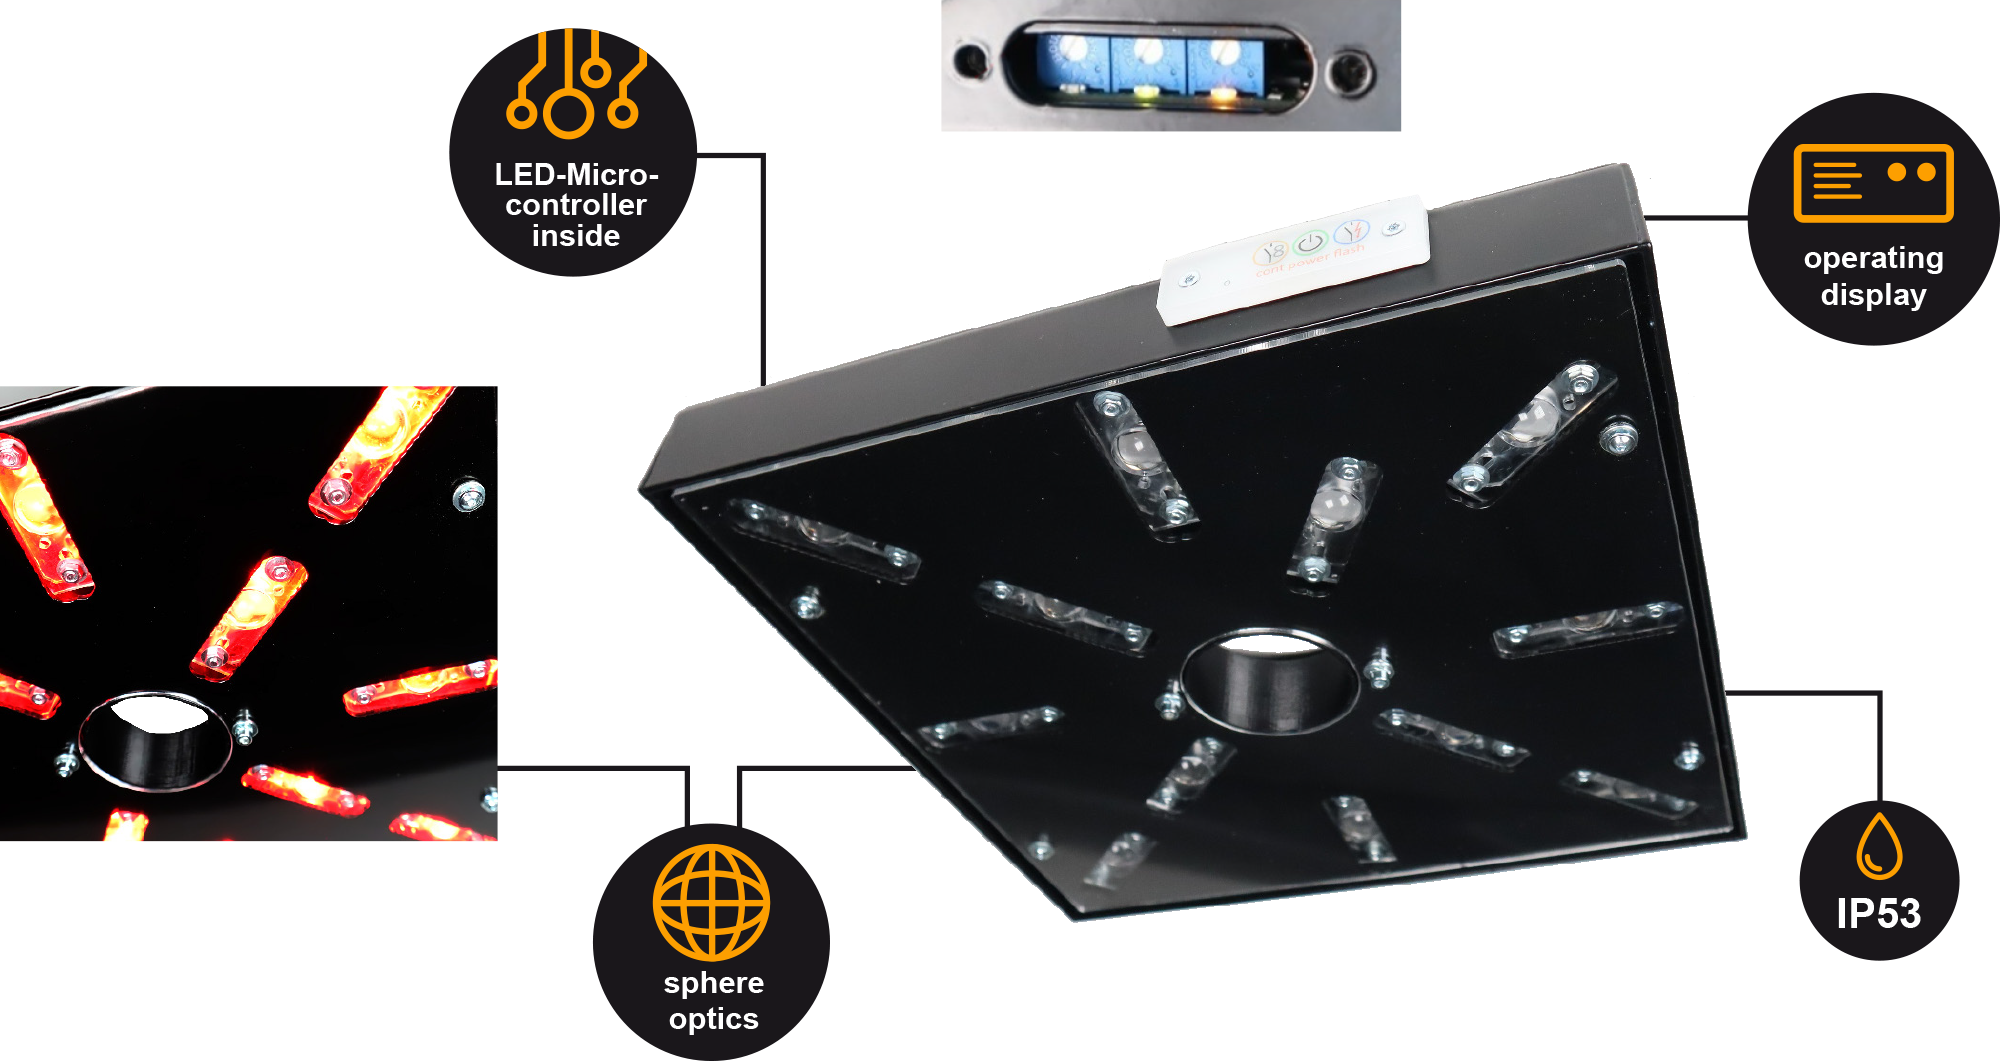 Focusor als punktgenau helle LED Beleuchtung für die industrielle Bildverarbeitung